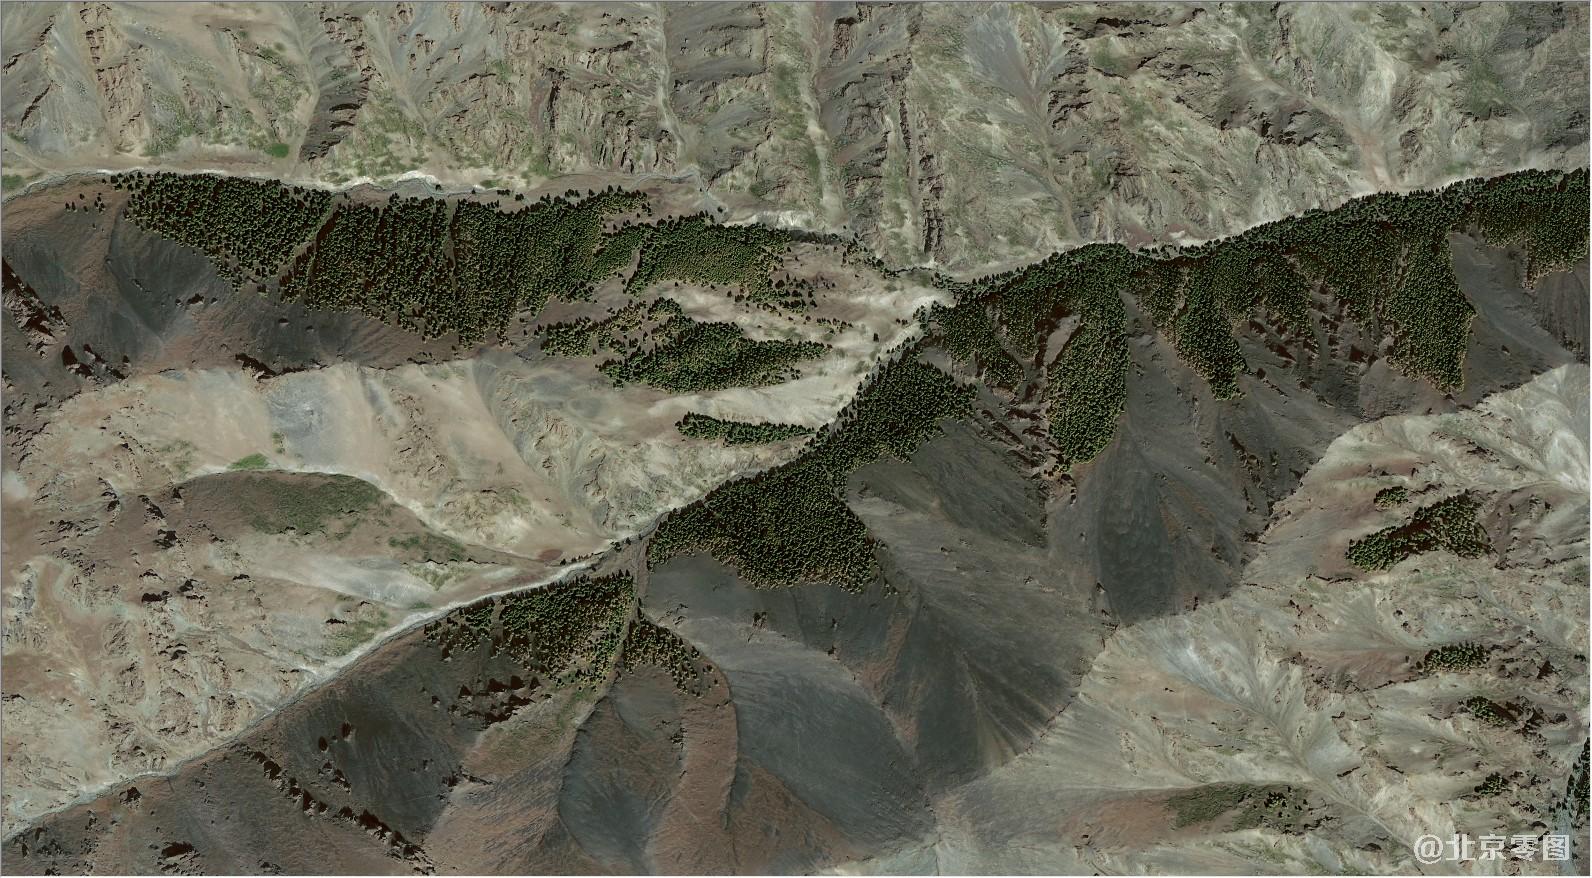 高分二号卫星拍摄的卫星图-山脊森林